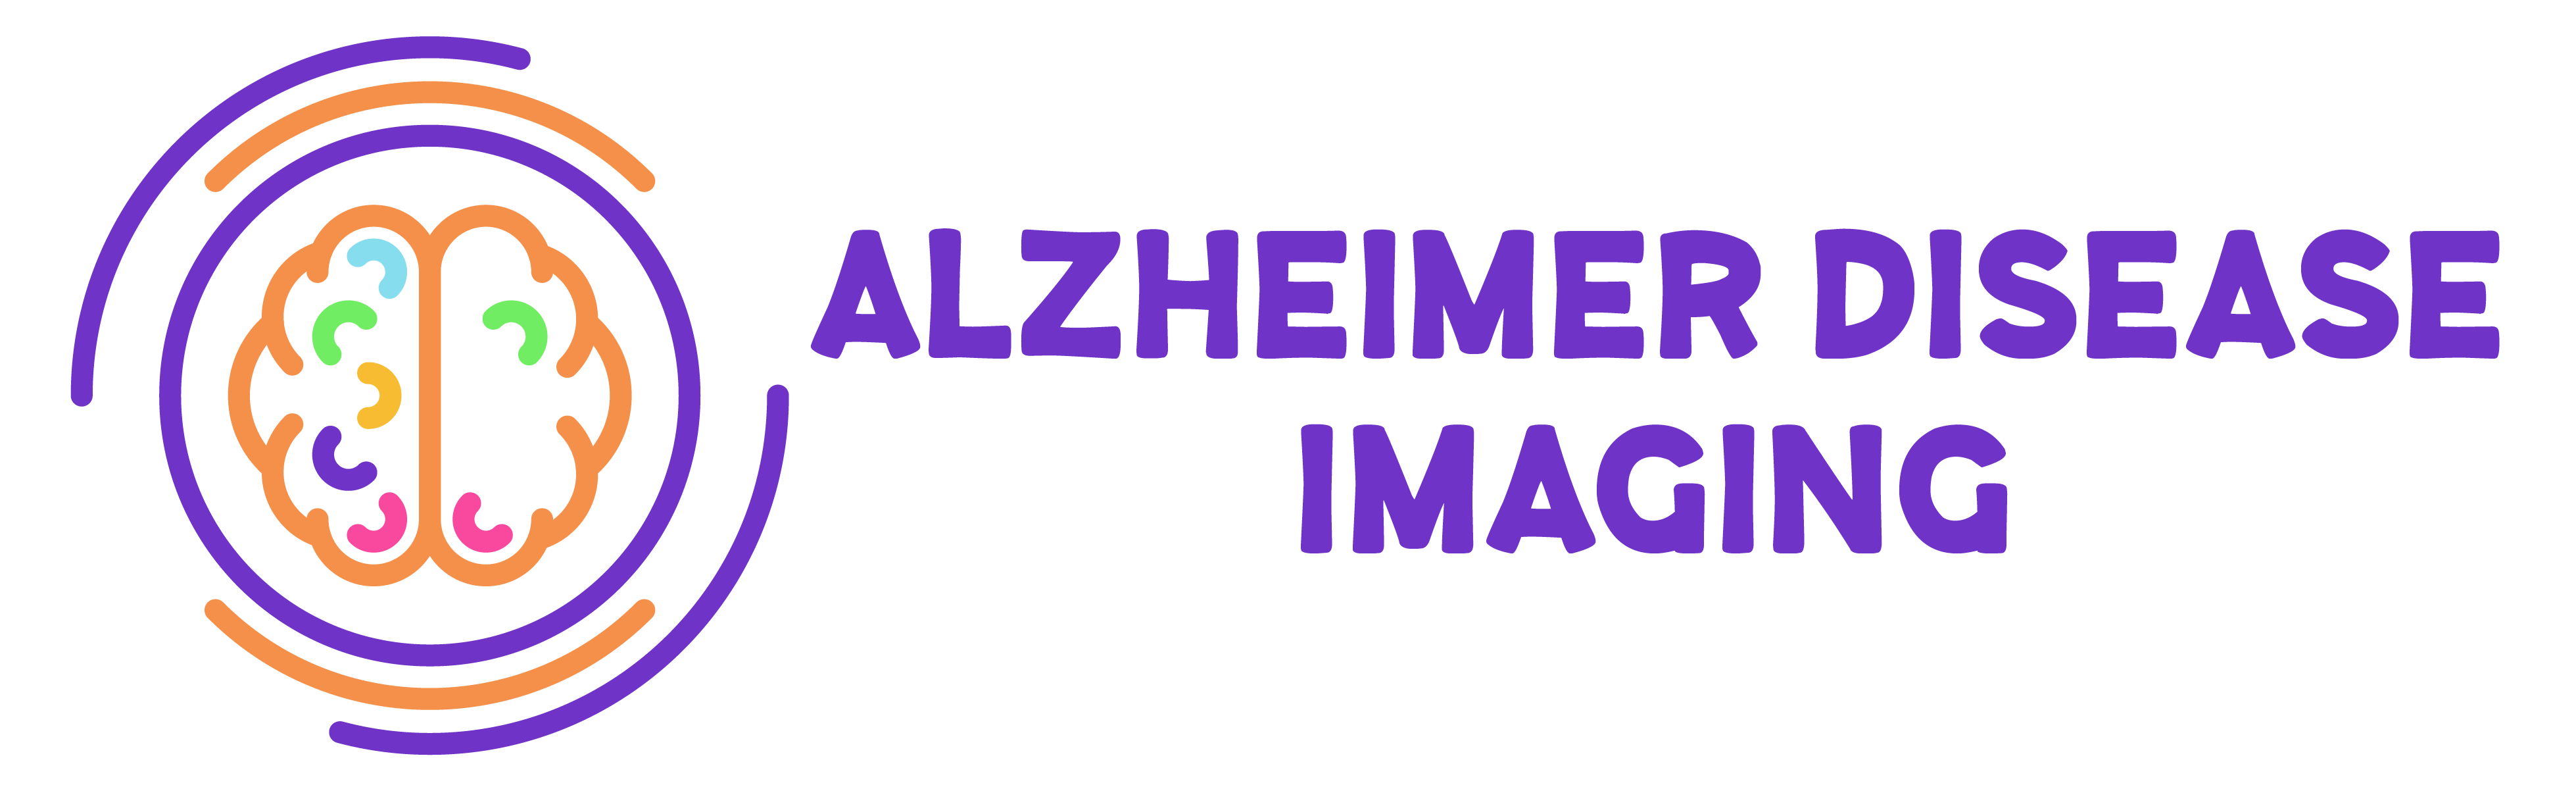 Alzheimer Disease Imaging New York